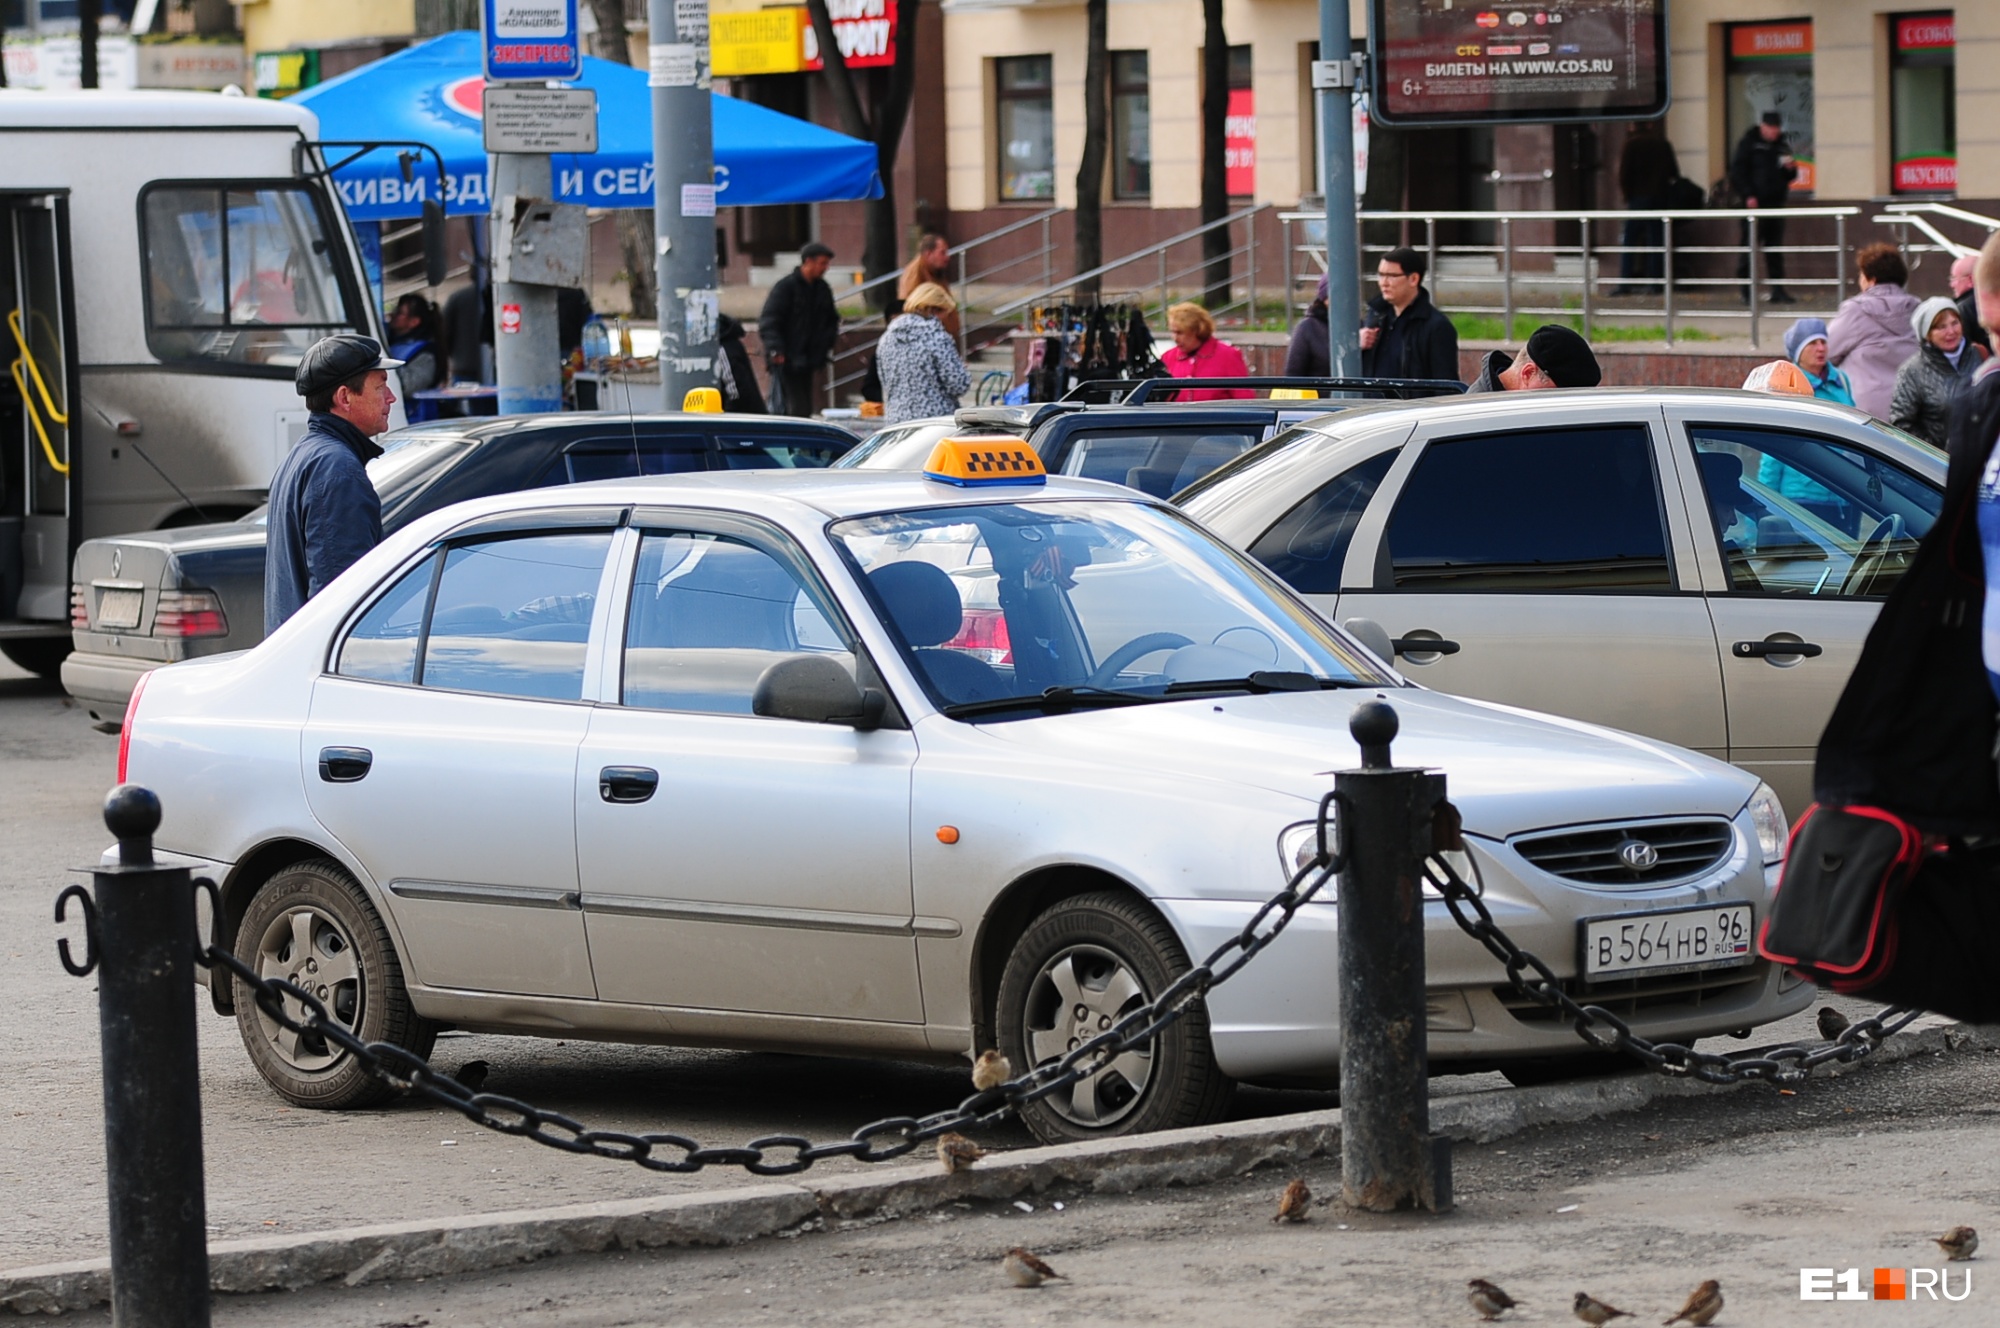 «Поздравляю, потеряли клиента». Екатеринбуржцы угрожают таксистам бойкотом из-за взлетевших цен